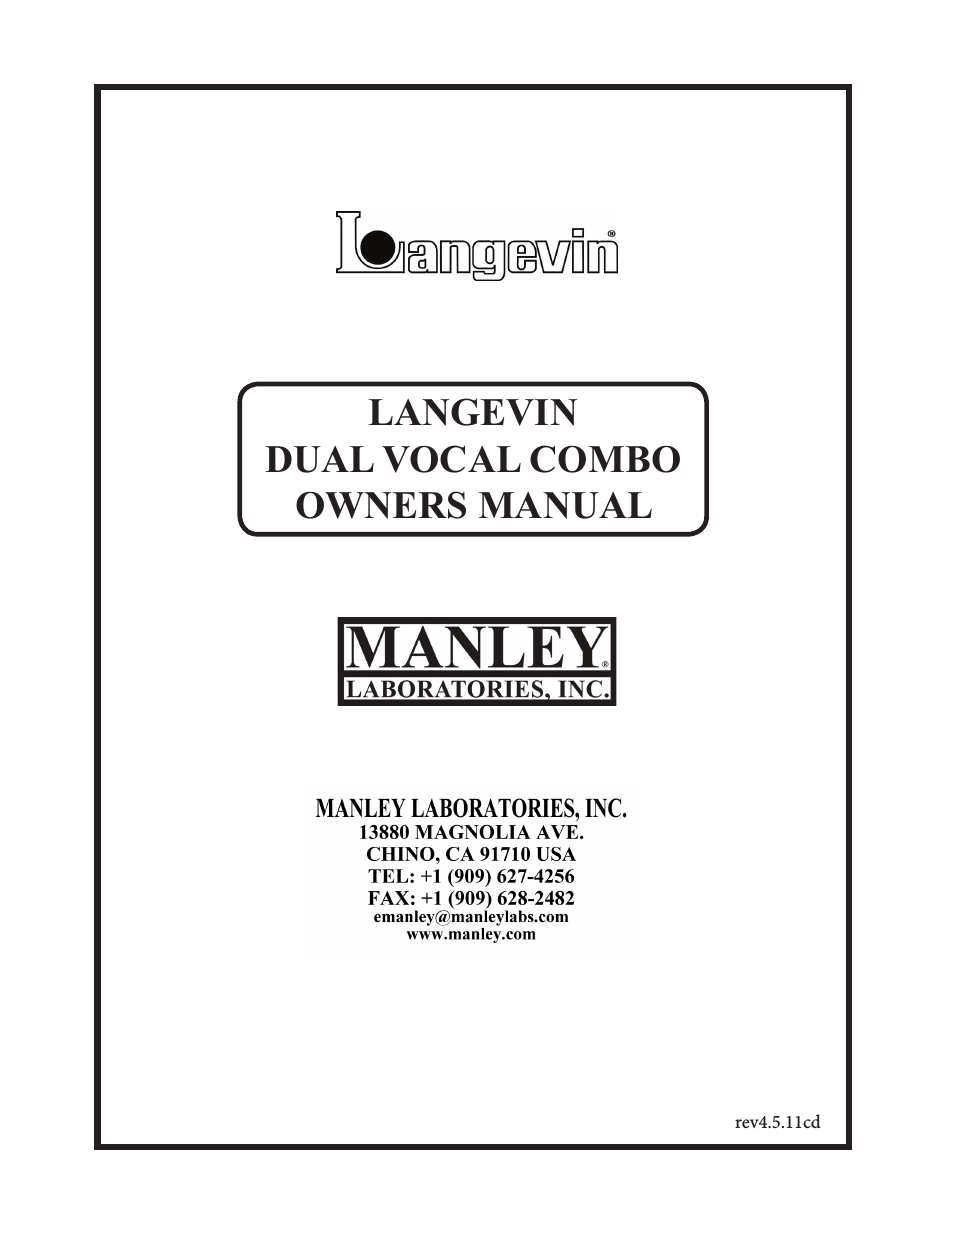 Langevin Dual Vocal Combo 1999 - 4/2001 LDVC000 - LDVC178